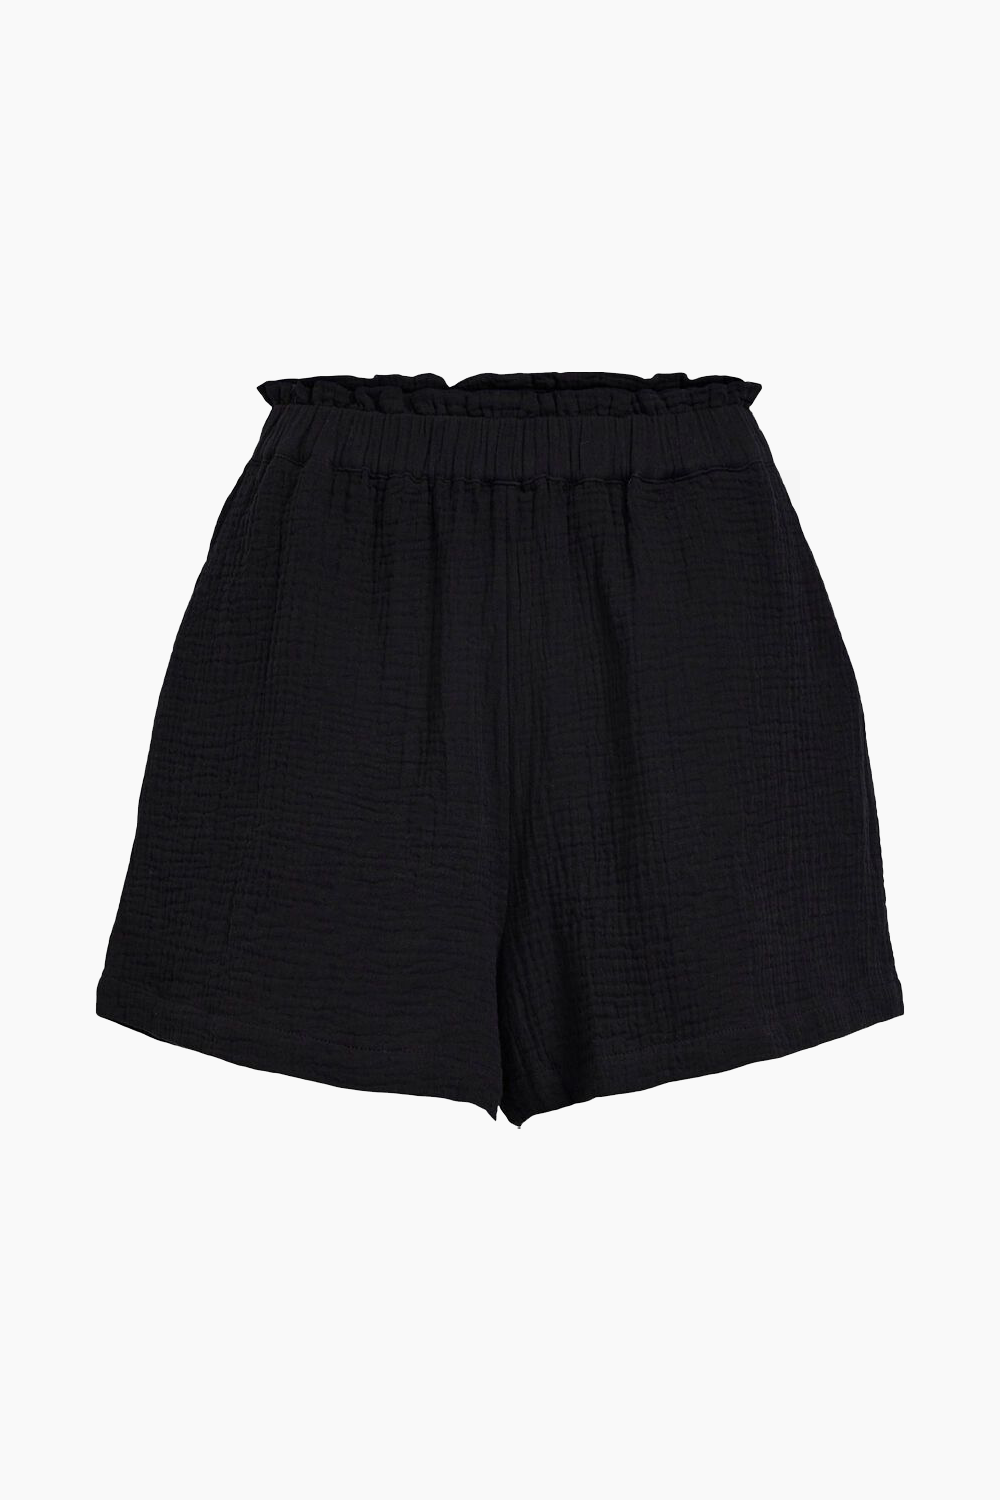 8: Objcarina HW Shorts - Black - Object - Sort XL